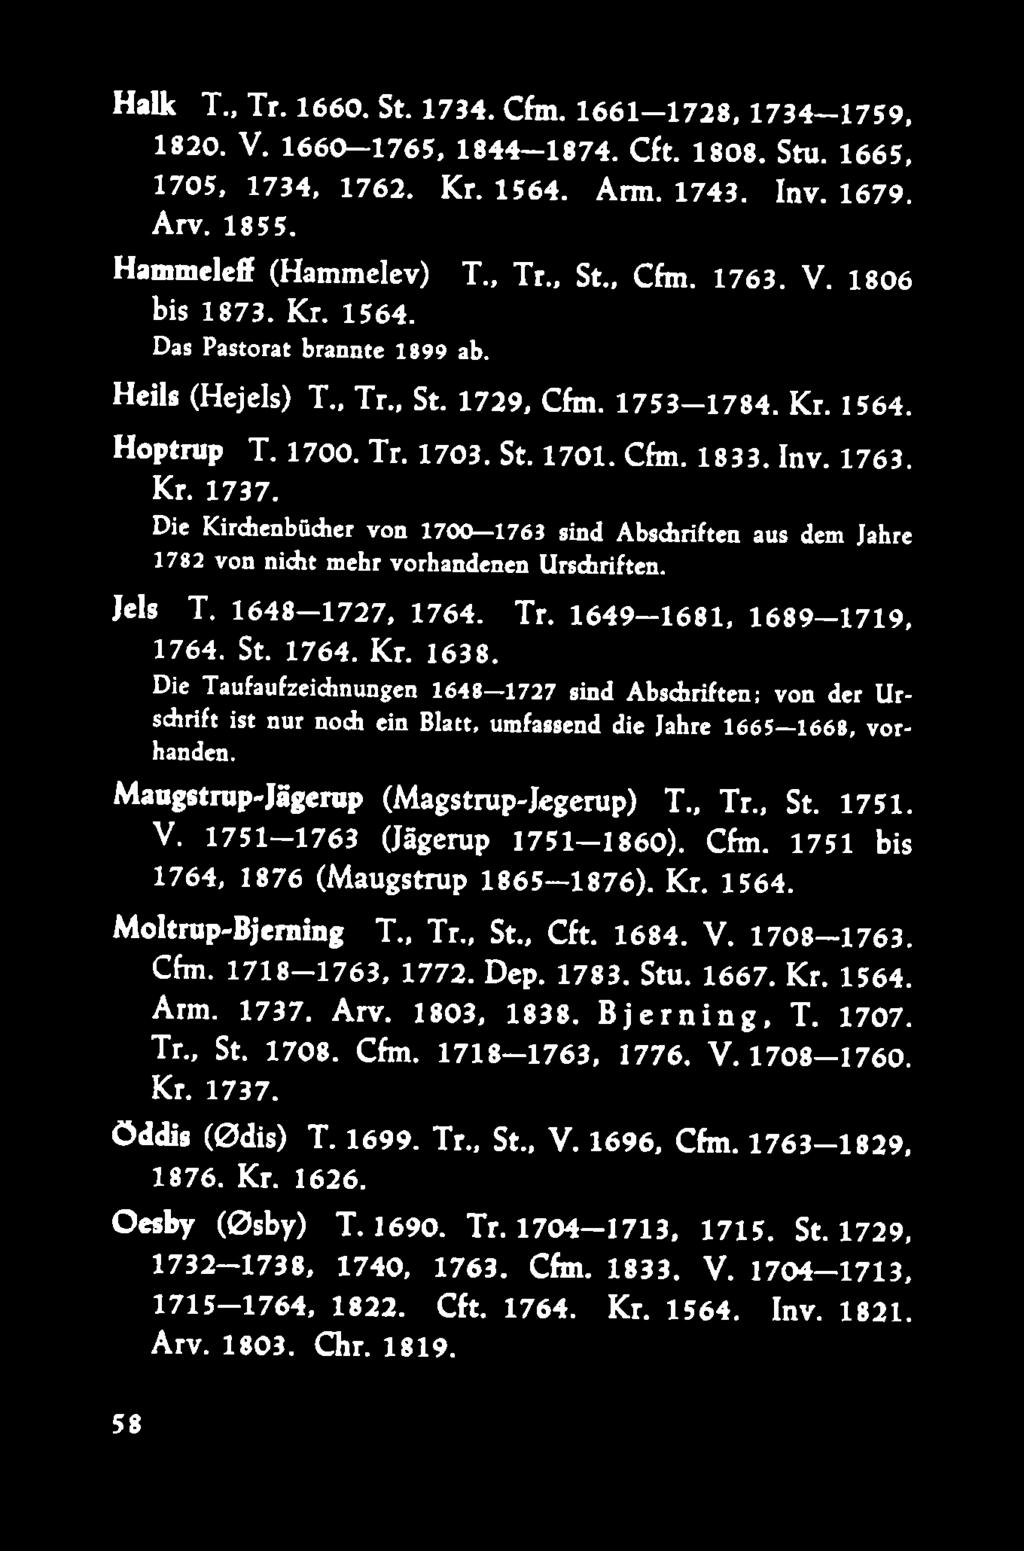 Die Kirdienbücher von 1700 1763 sind A bsariften aus dem Jahre 1782 von nidit mehr vorhandenen Urschriften. Jels T. 1648 1727, 1764. Tr. 1649 1681, 1689 1719, 1764. St. 1764. Kr. 1638.